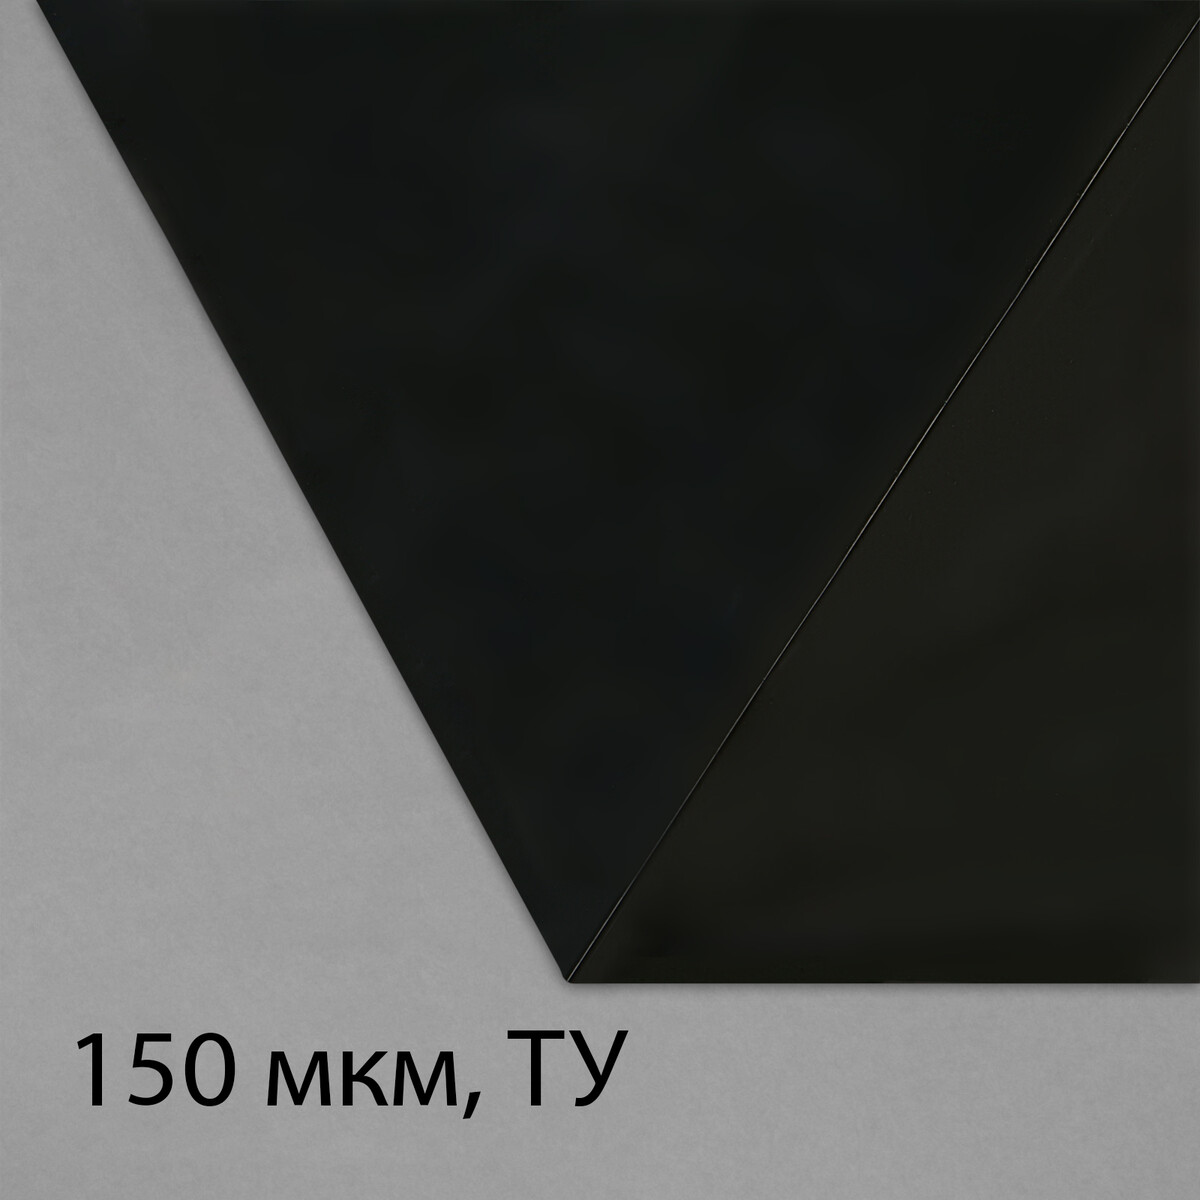 Пленка из полиэтилена, техническая, толщина 150 мкм, черная, 5 × 3 м, рукав (1.5 м × 2), эконом 50%, для дома и сада пленка полиэтиленовая толщина 150 мкм прозрачная 5 × 3 м рукав 1 5 м × 2 эконом 50%